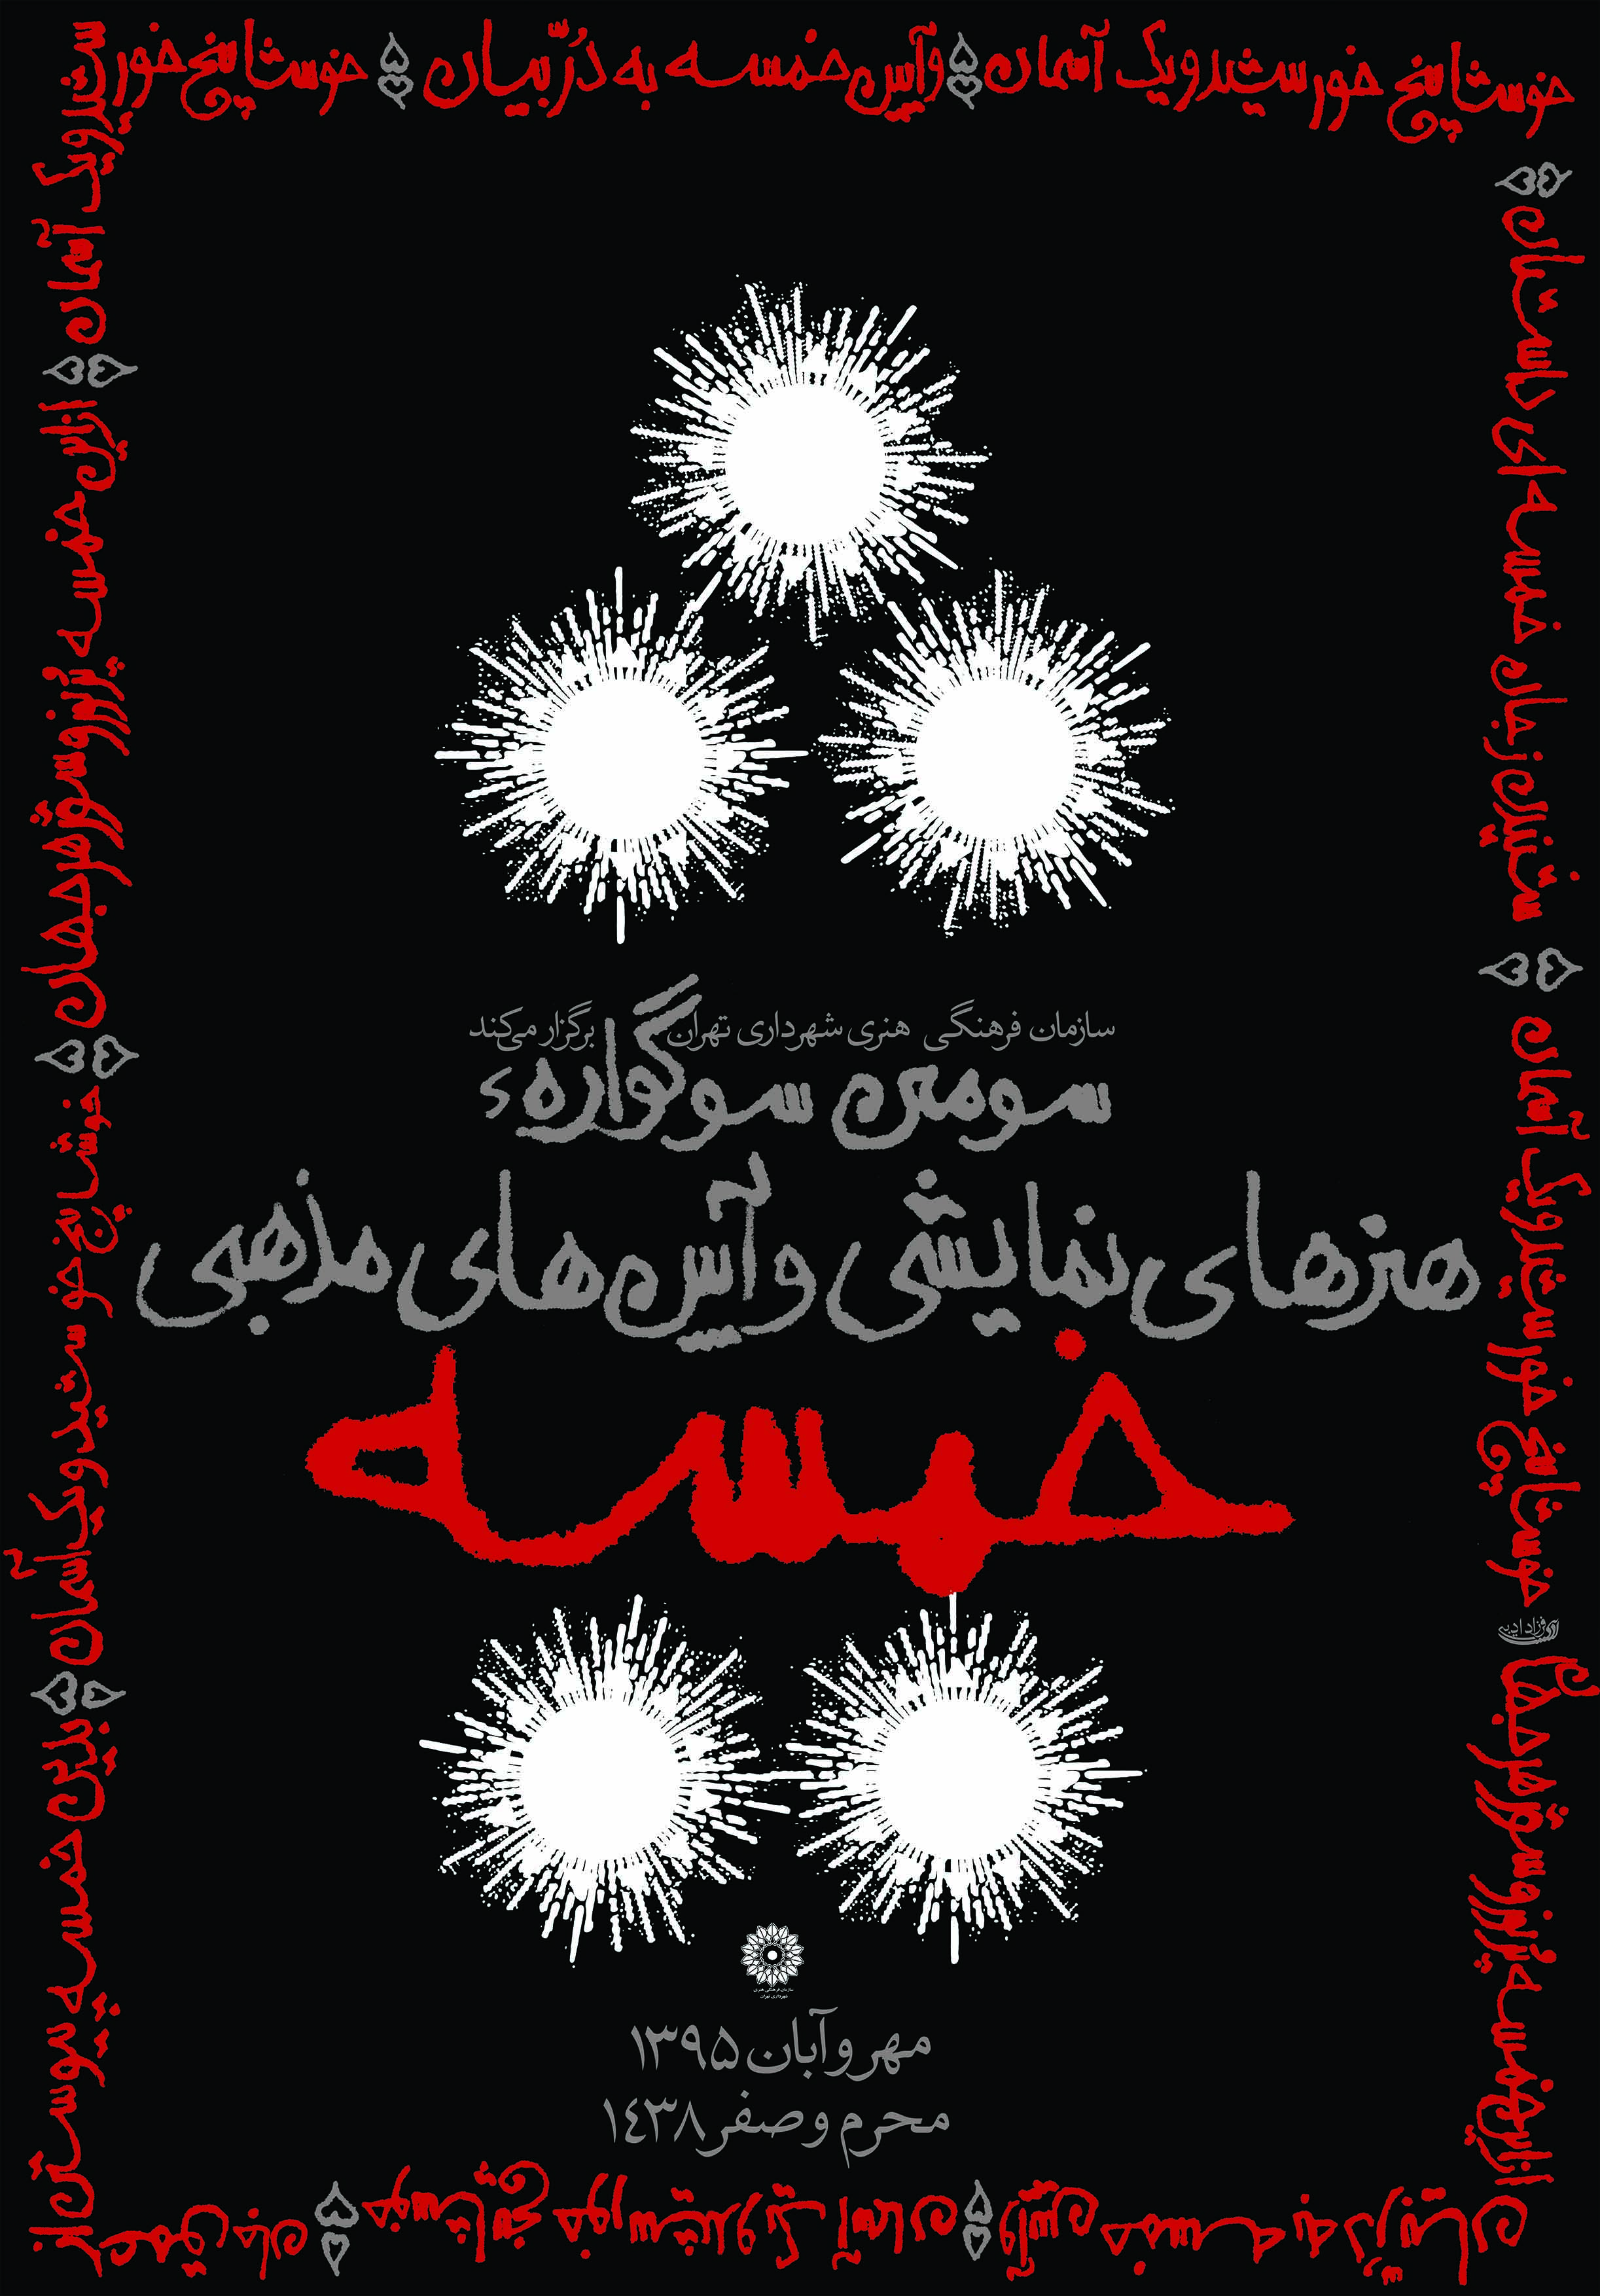 فرزاد ادیبی - پوستر سومین سوگواره هنرهای نمایشی خمسه